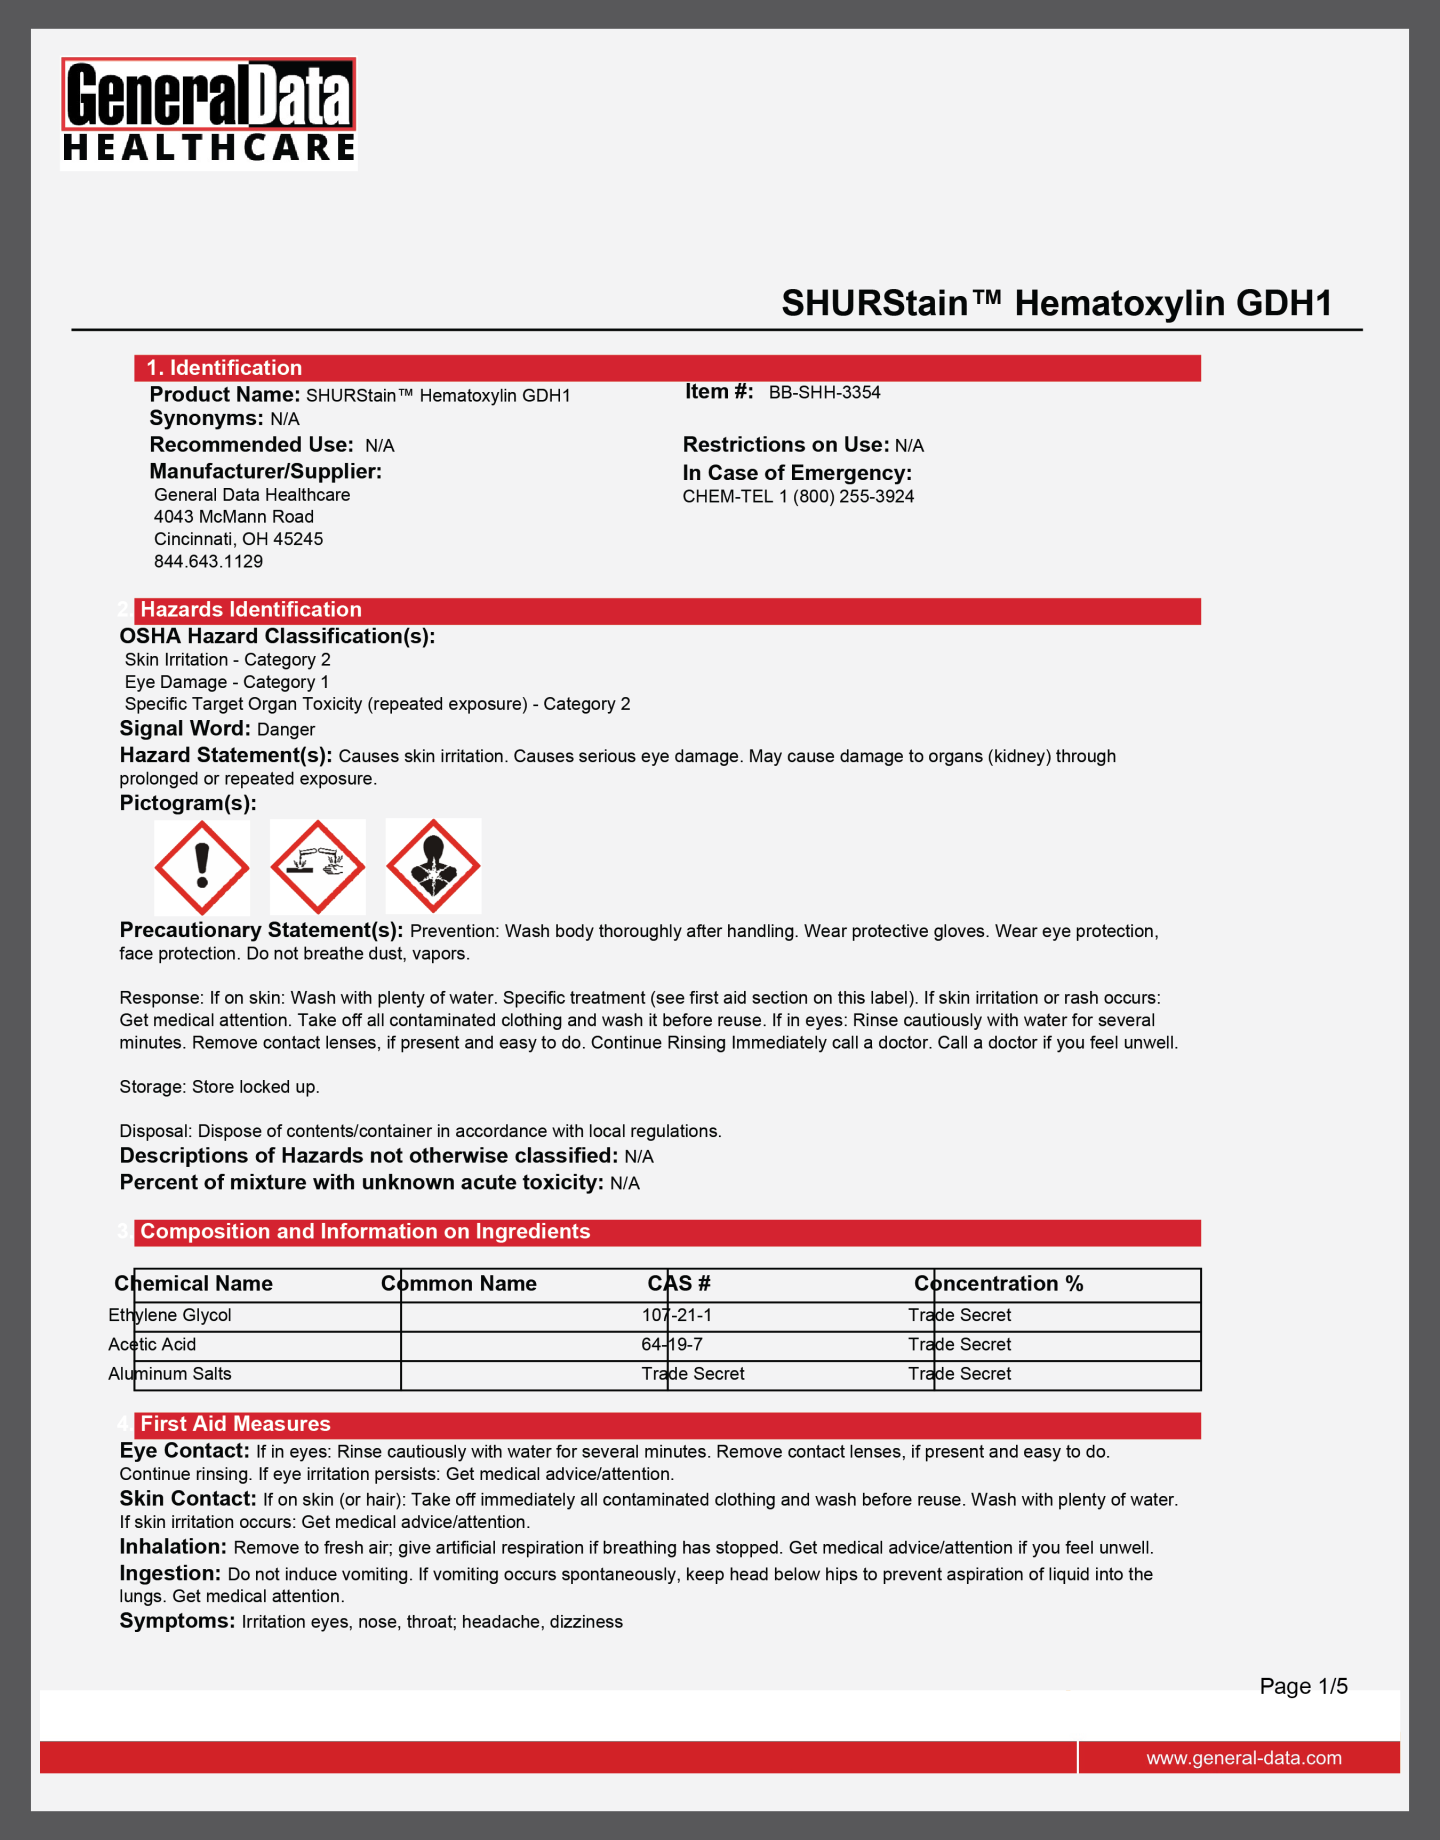 SHURStain Hematoxylin GDH1 Safety Data Sheet 